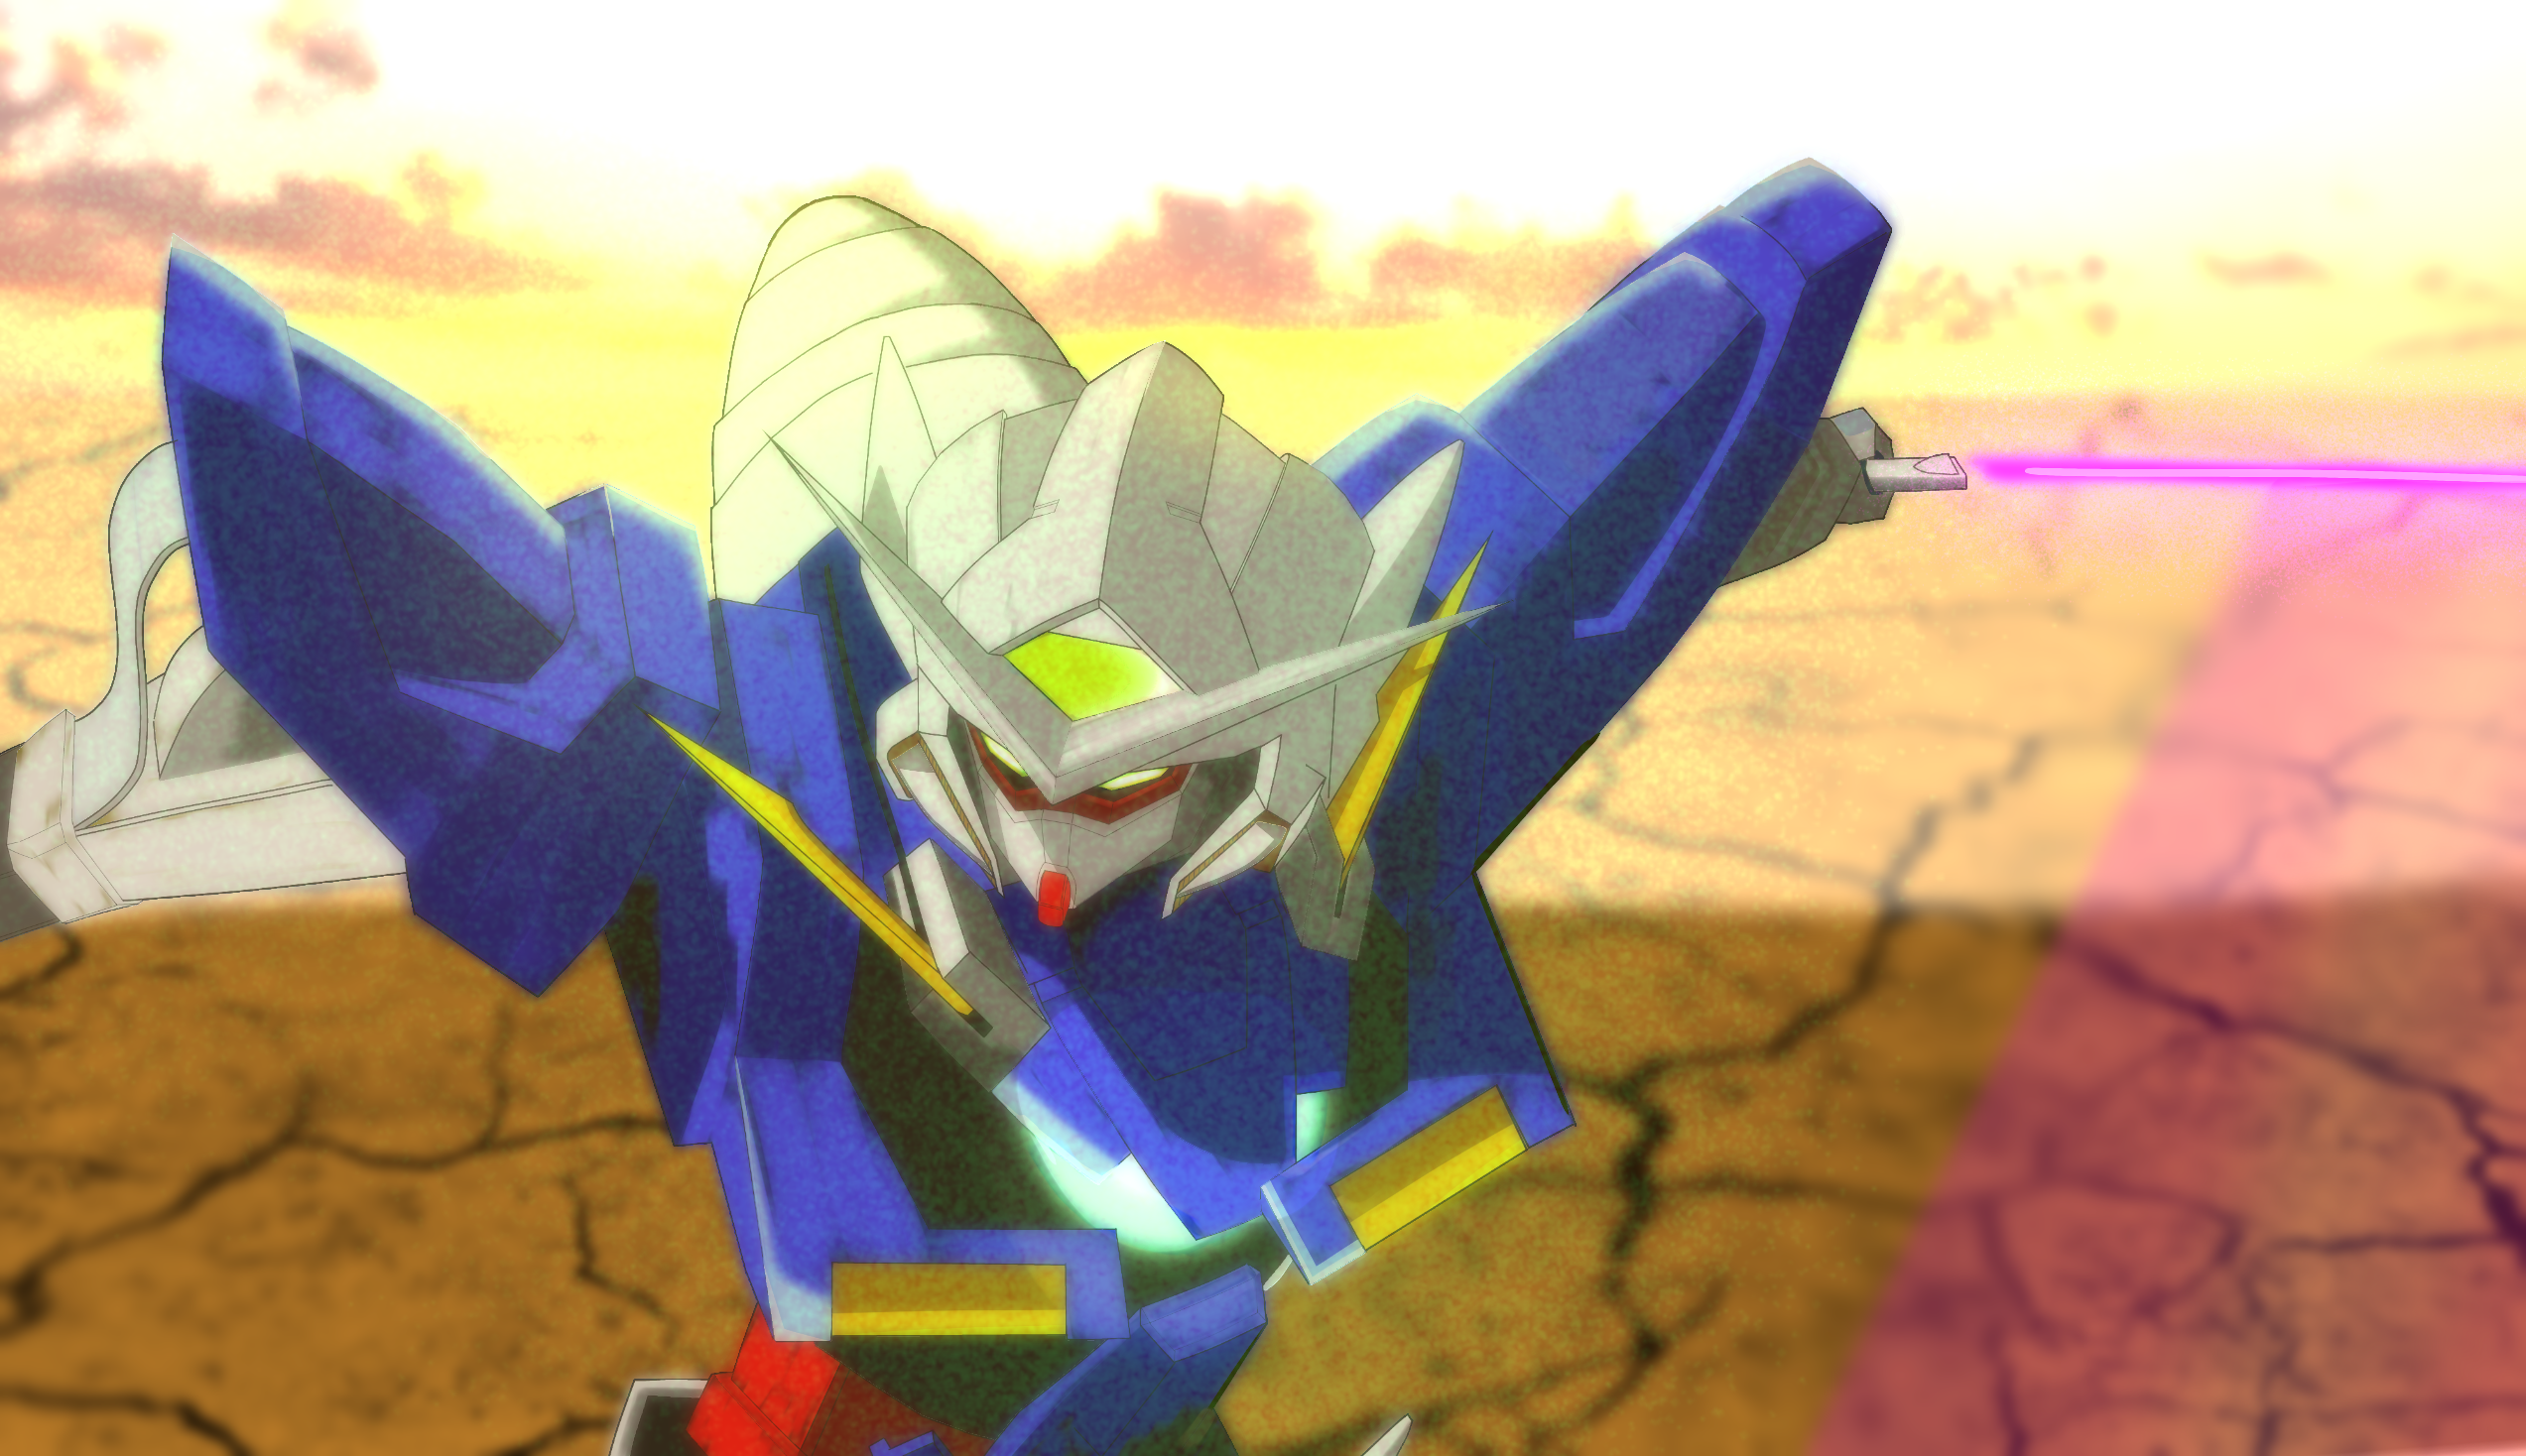 Anime 2546x1468 anime mechs Super Robot Taisen Gundam Mobile Suit Gundam 00 Gundam Exia artwork digital art fan art